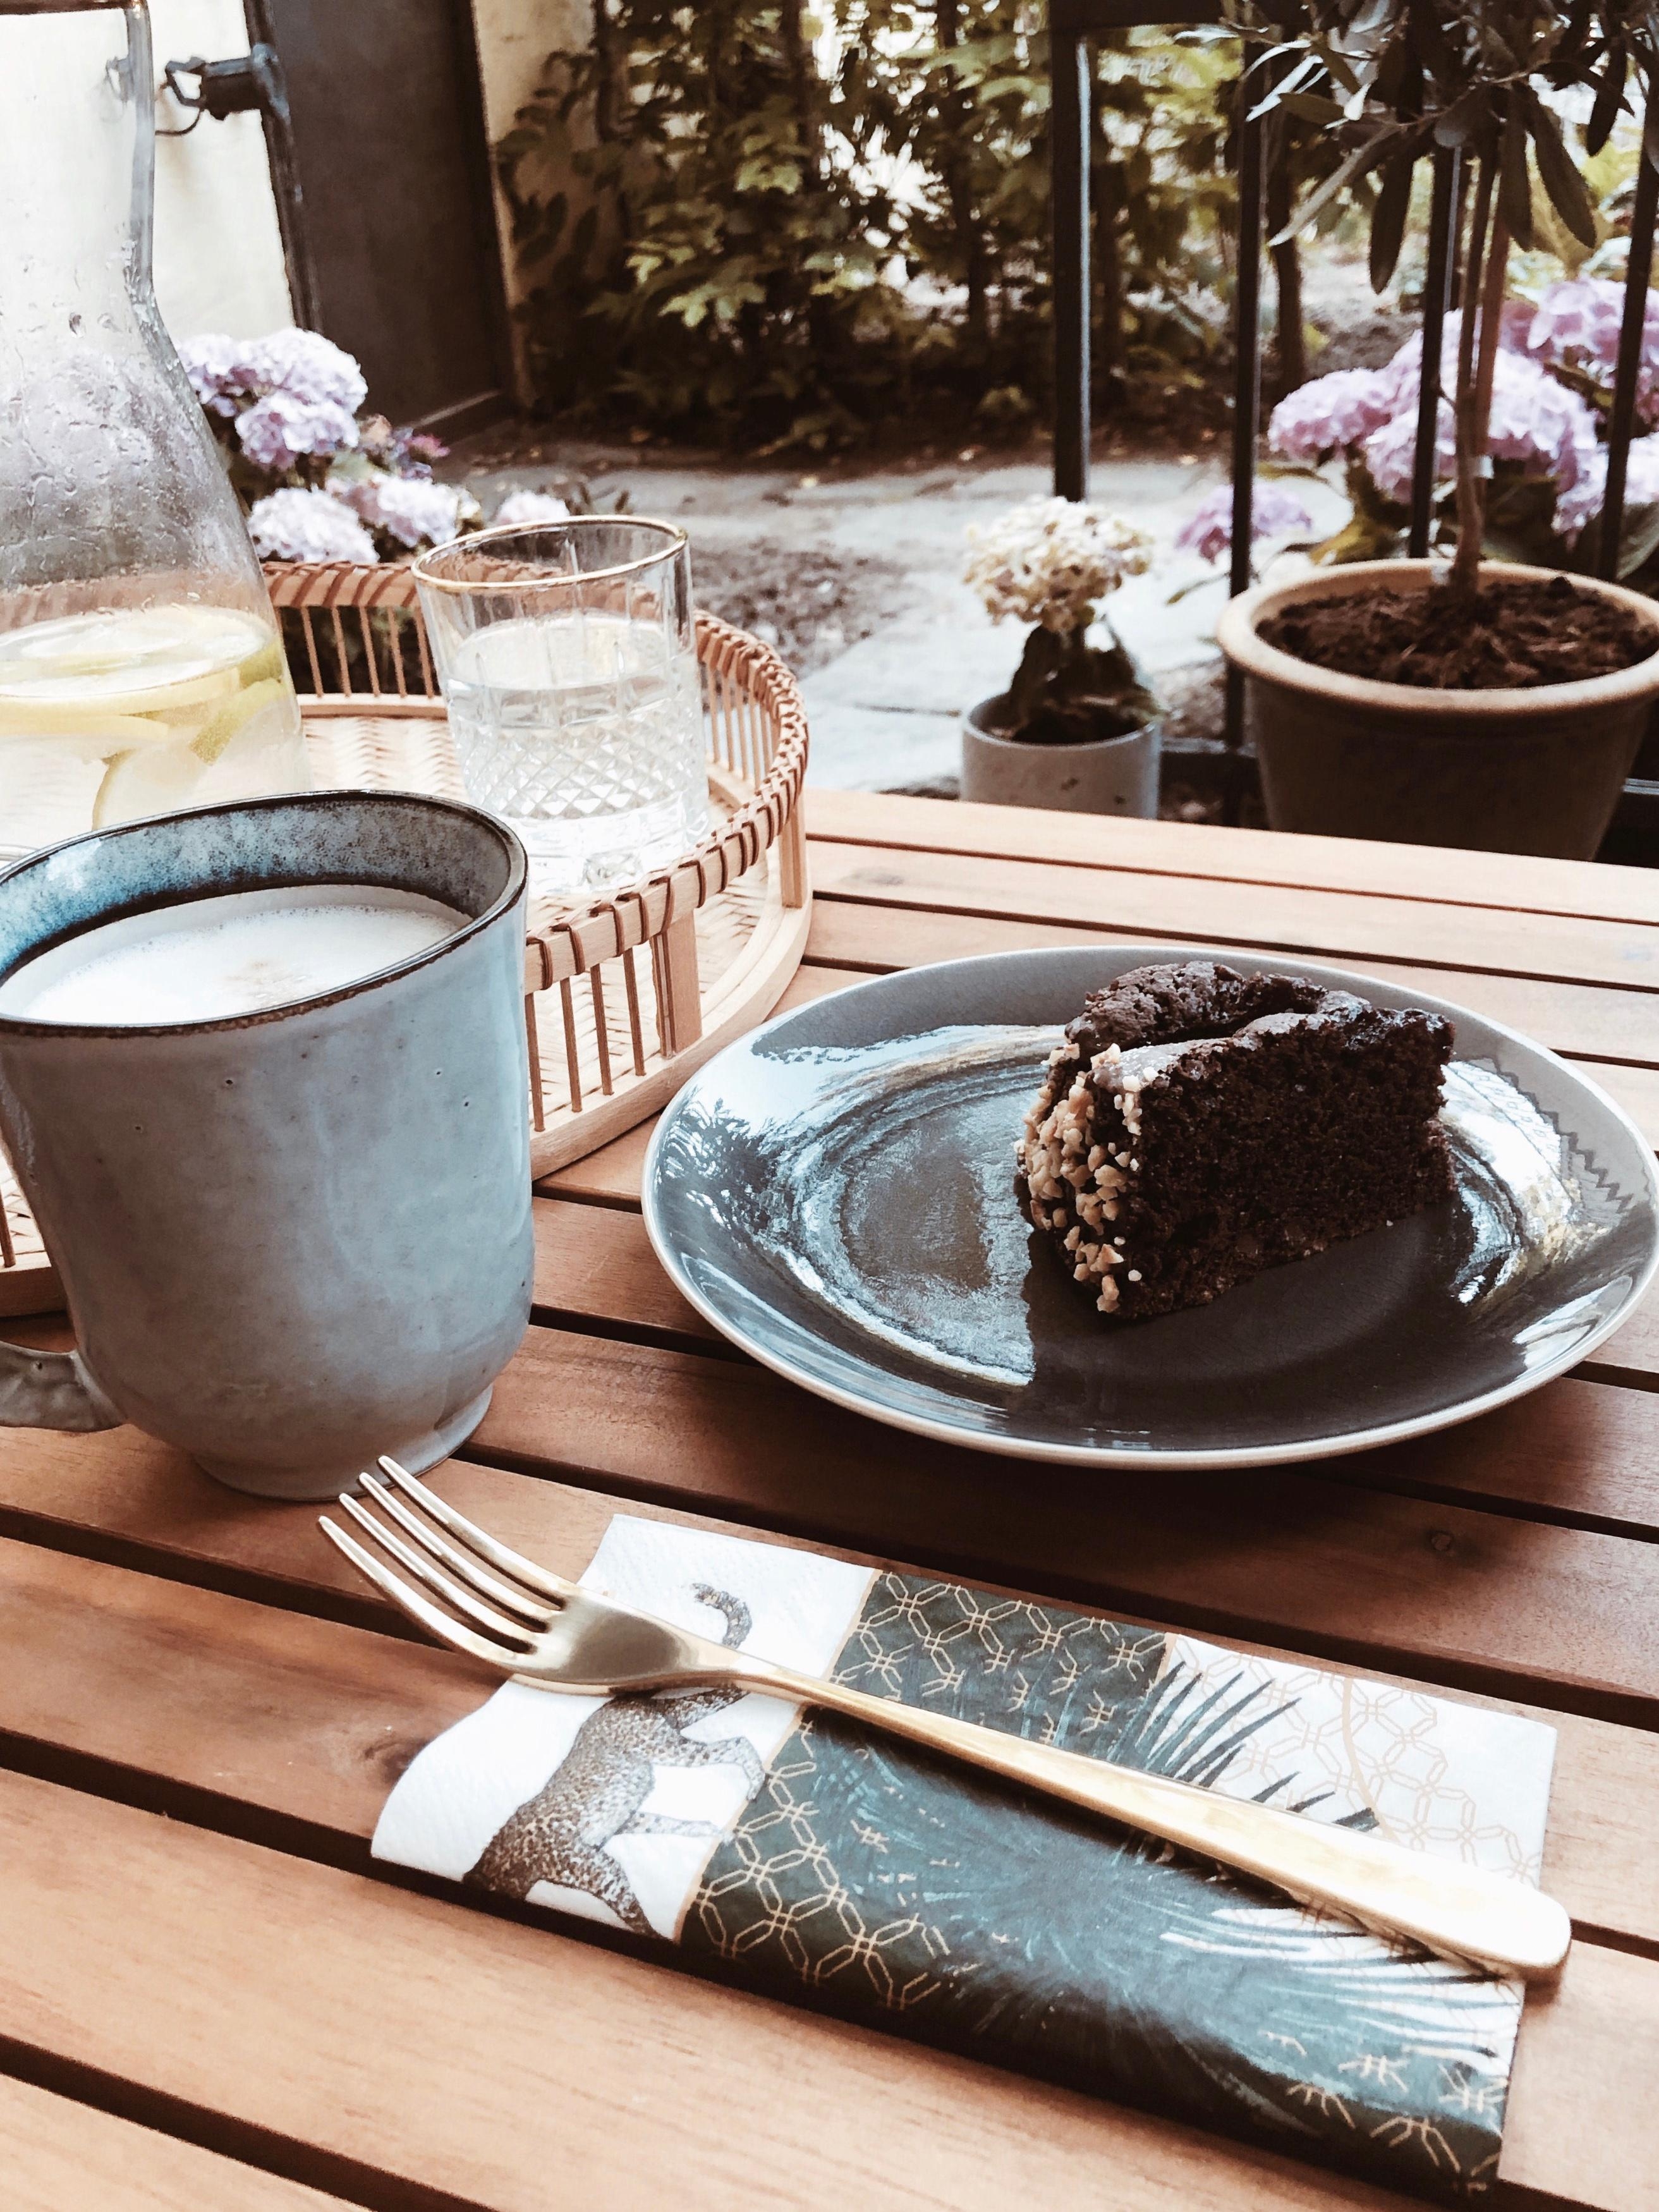 Mein #sommermoment ist, wenn man sich auf der Terasse bei Freunden zum Kaffee&Kuchen trifft ☀️ #citymeetsgarden #friends